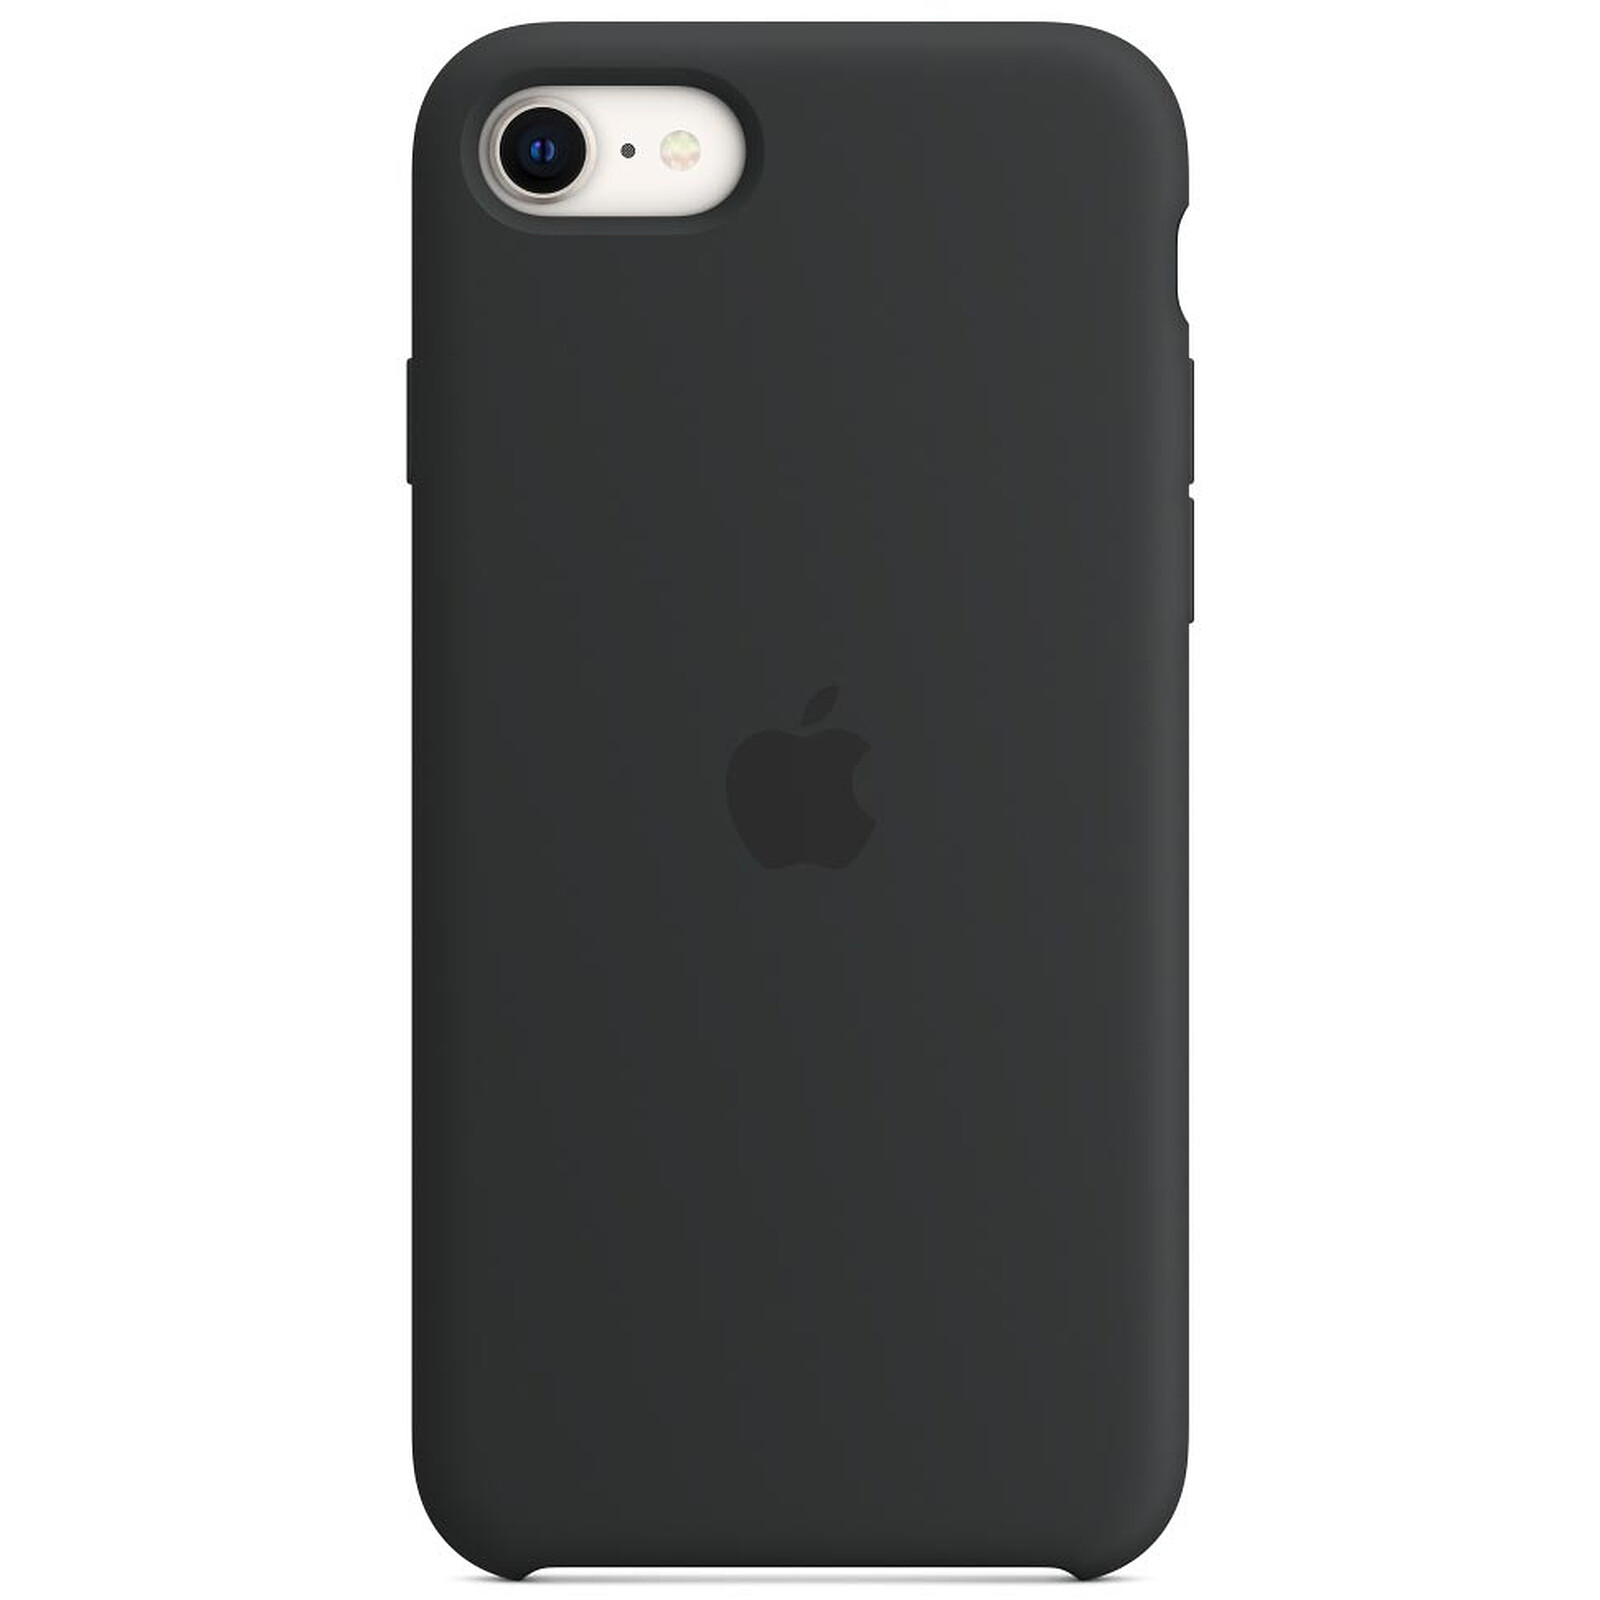 Funda de silicona para el iPhone XS Max - Negro - Apple (ES)